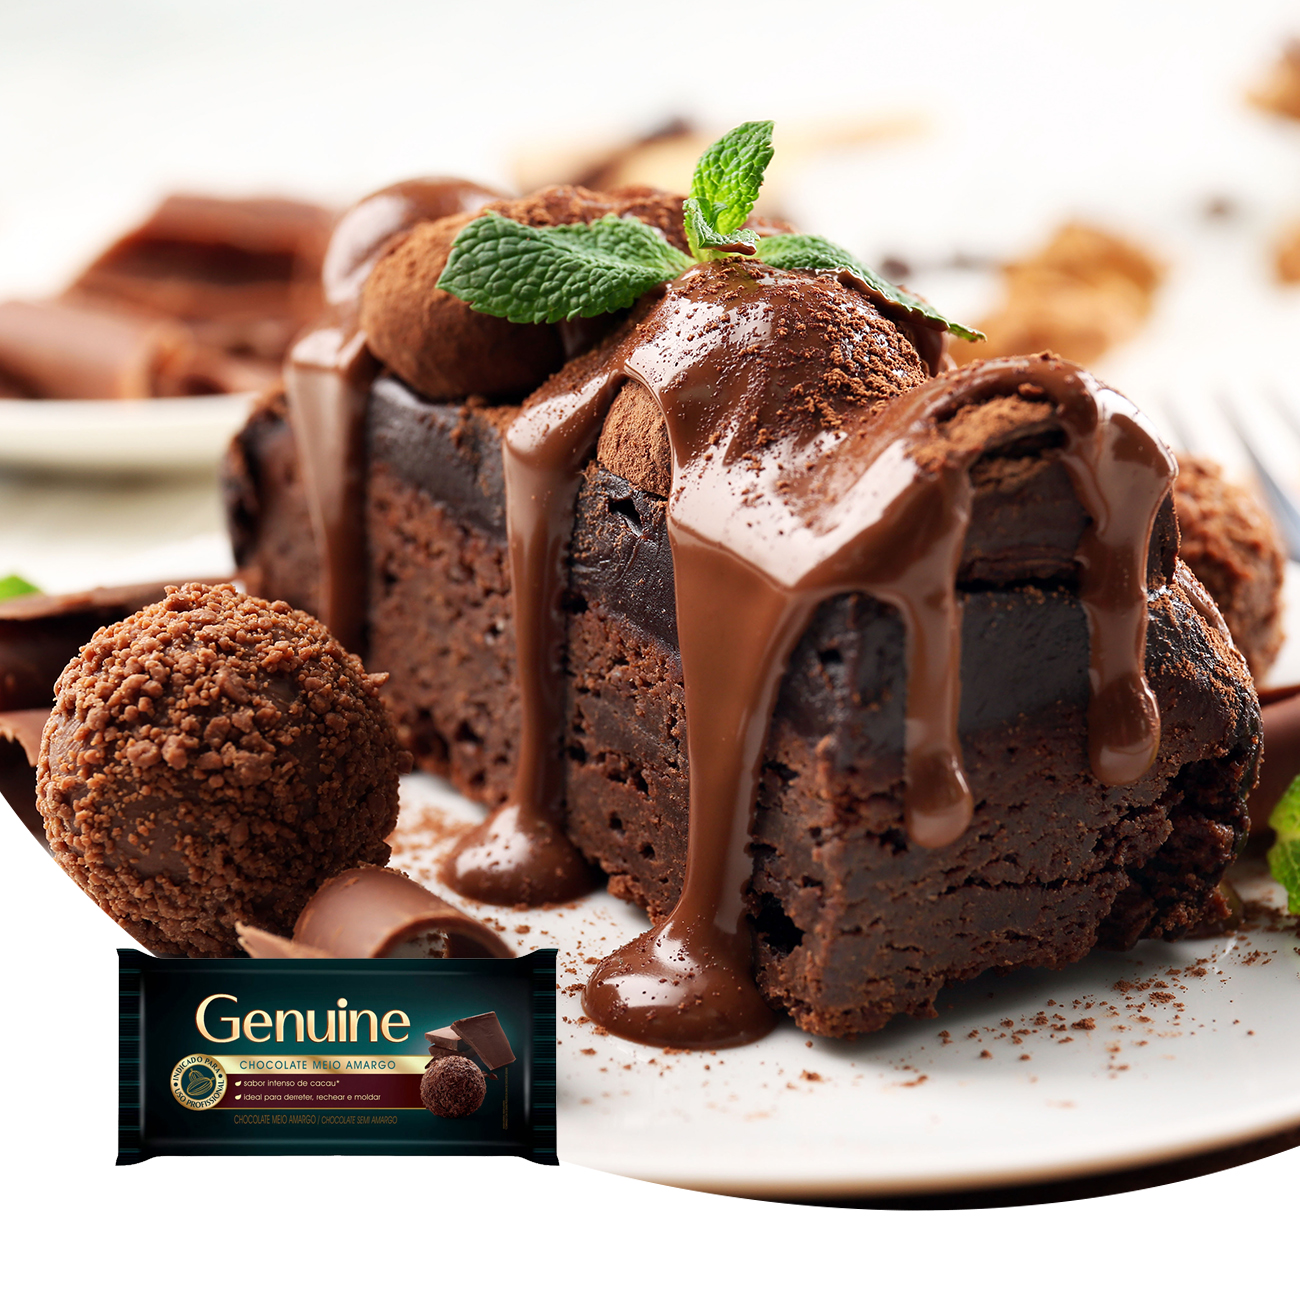 Cobertura de Chocolate em Barra Cargill Genuine Meio Amargo 1kg